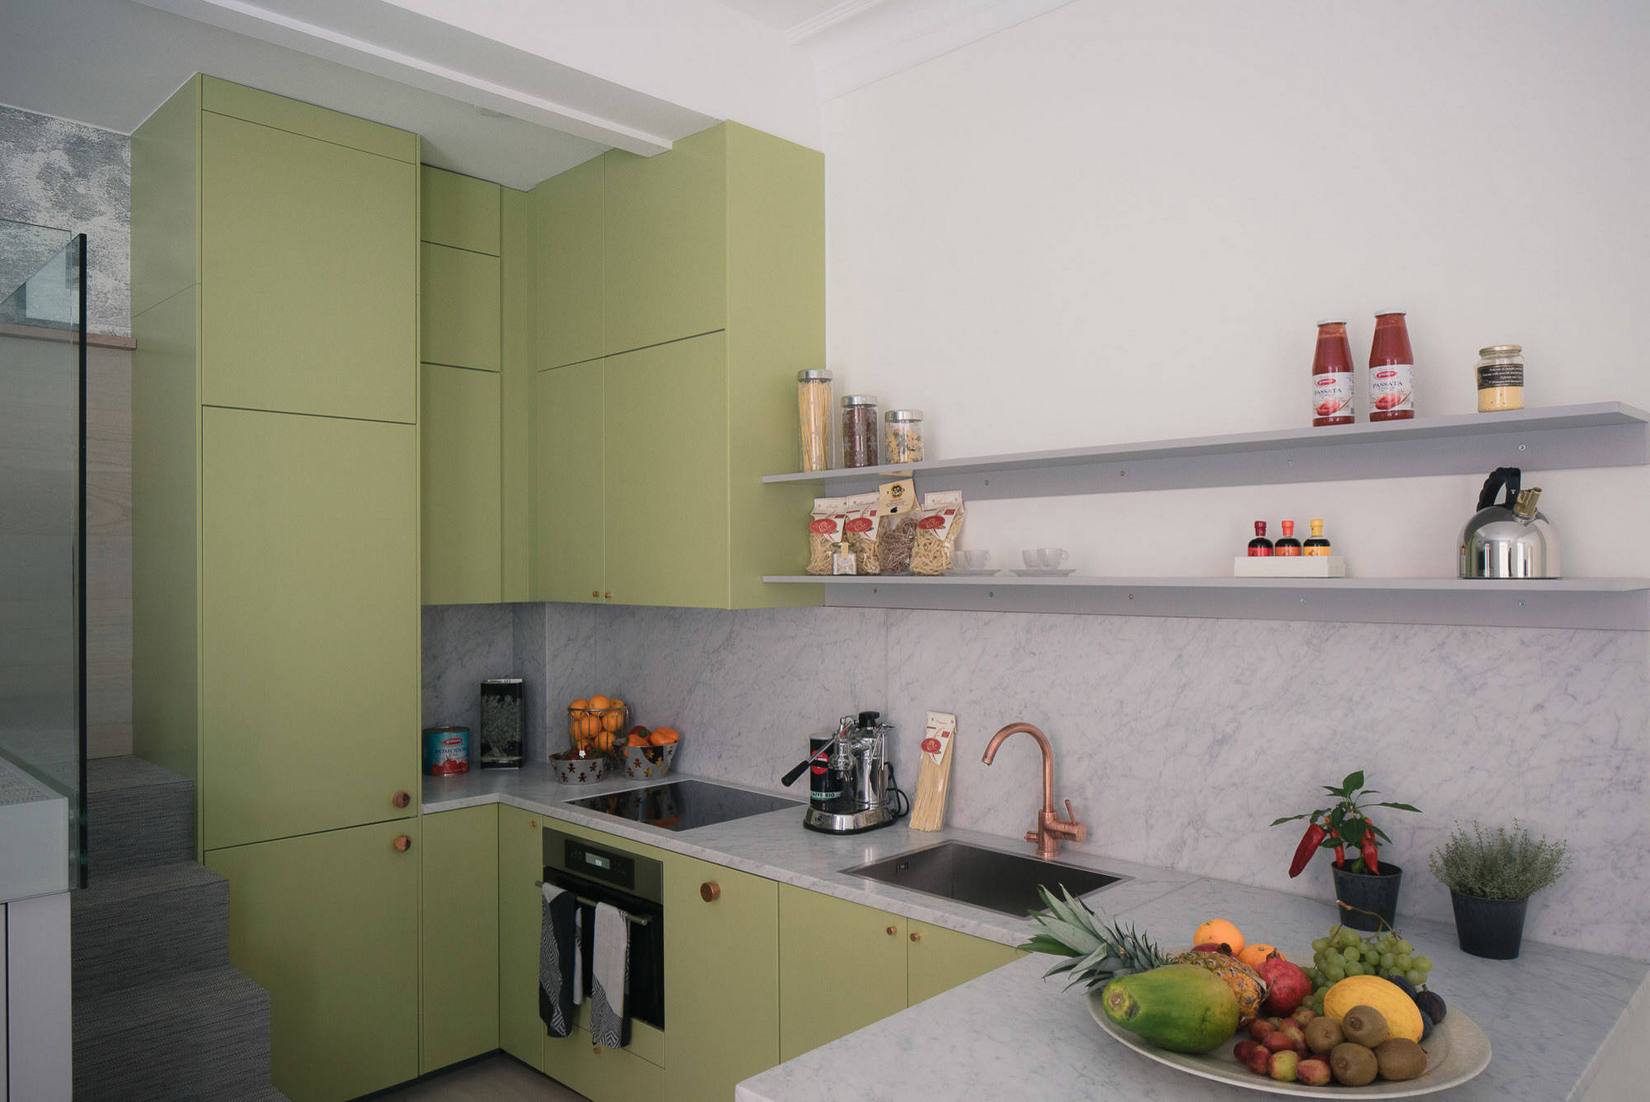 Gam màu ô liu được lựa chọn cho màu sơn tủ bếp, kết hợp đá cẩm thạch ốp mặt bàn và khu vực backsplash tạo nên vẻ đẹp sang trọng.